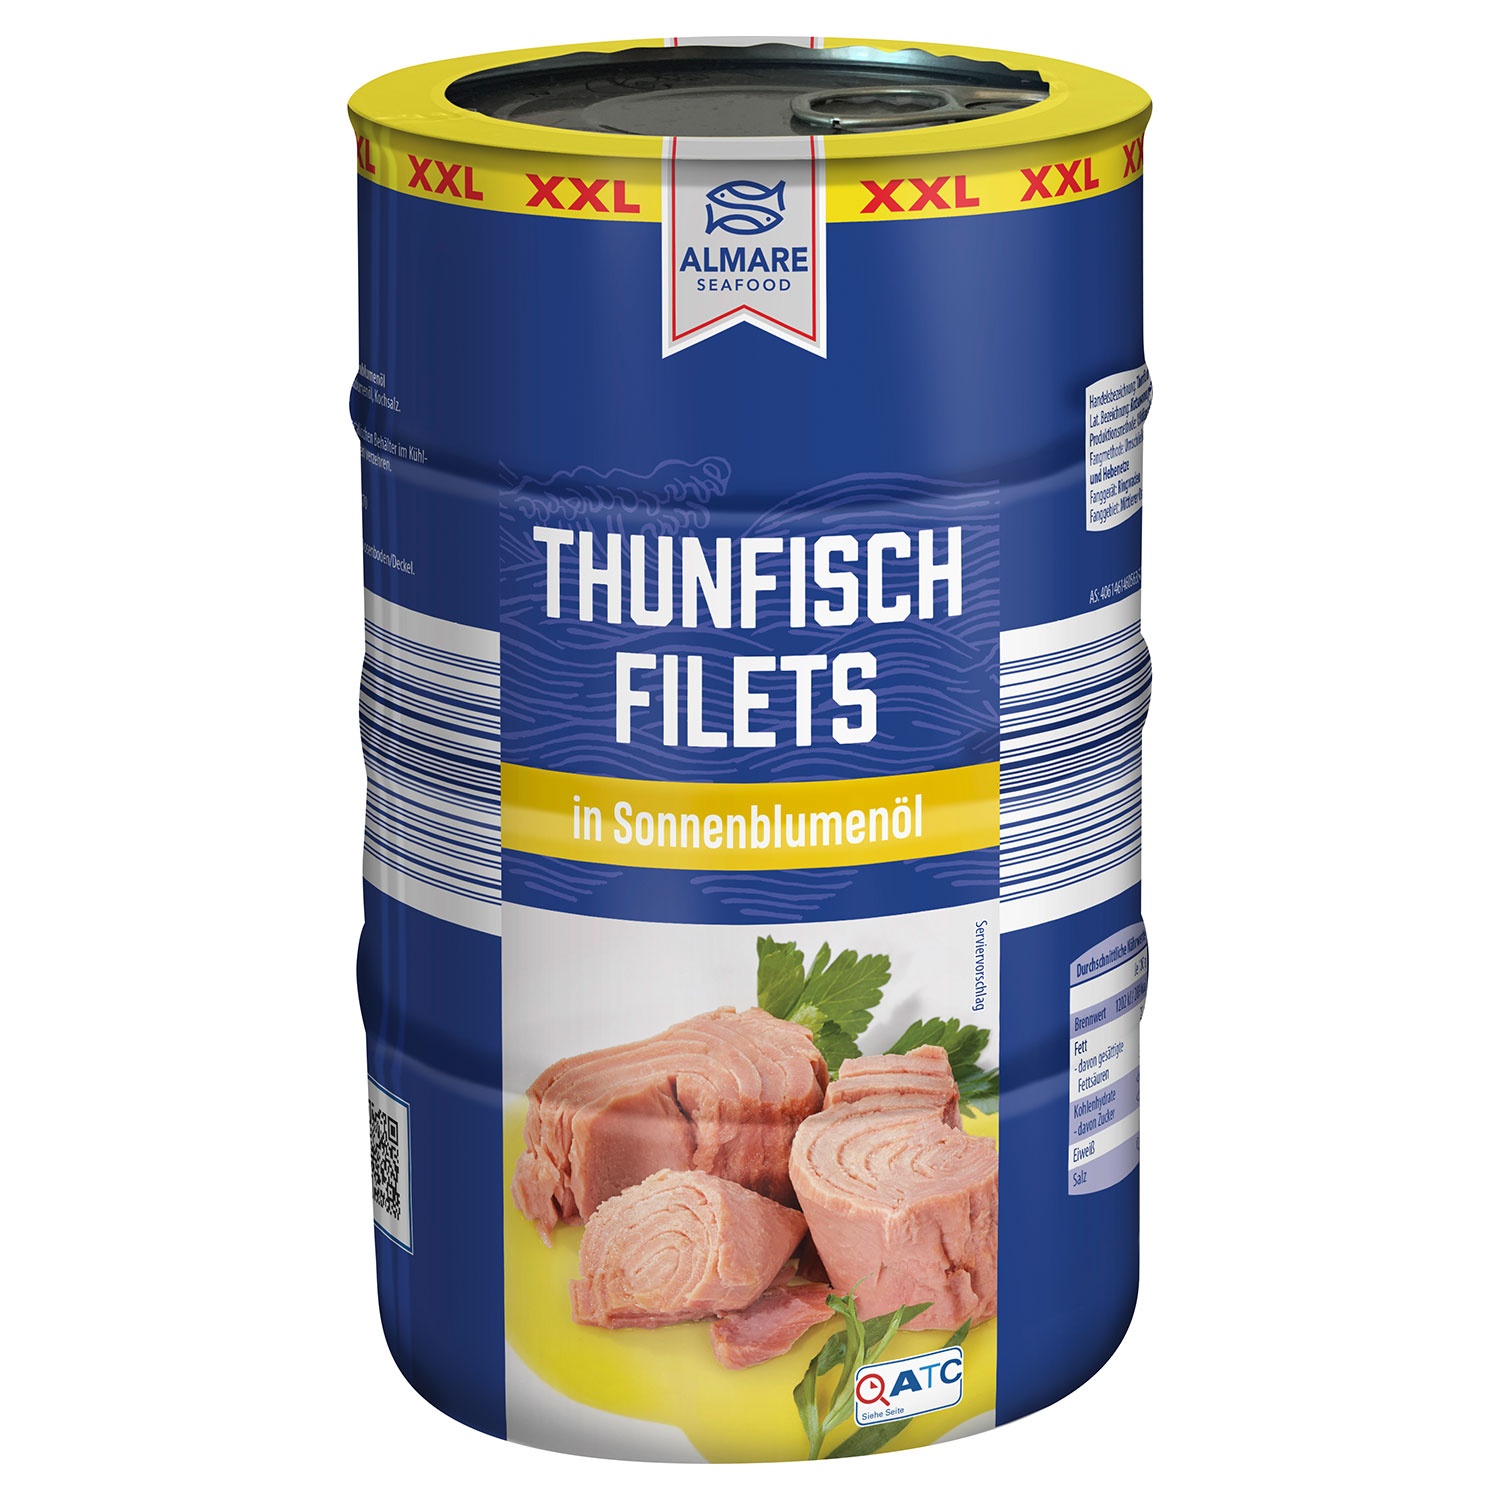 ALMARE Thunfischfilets 740 g